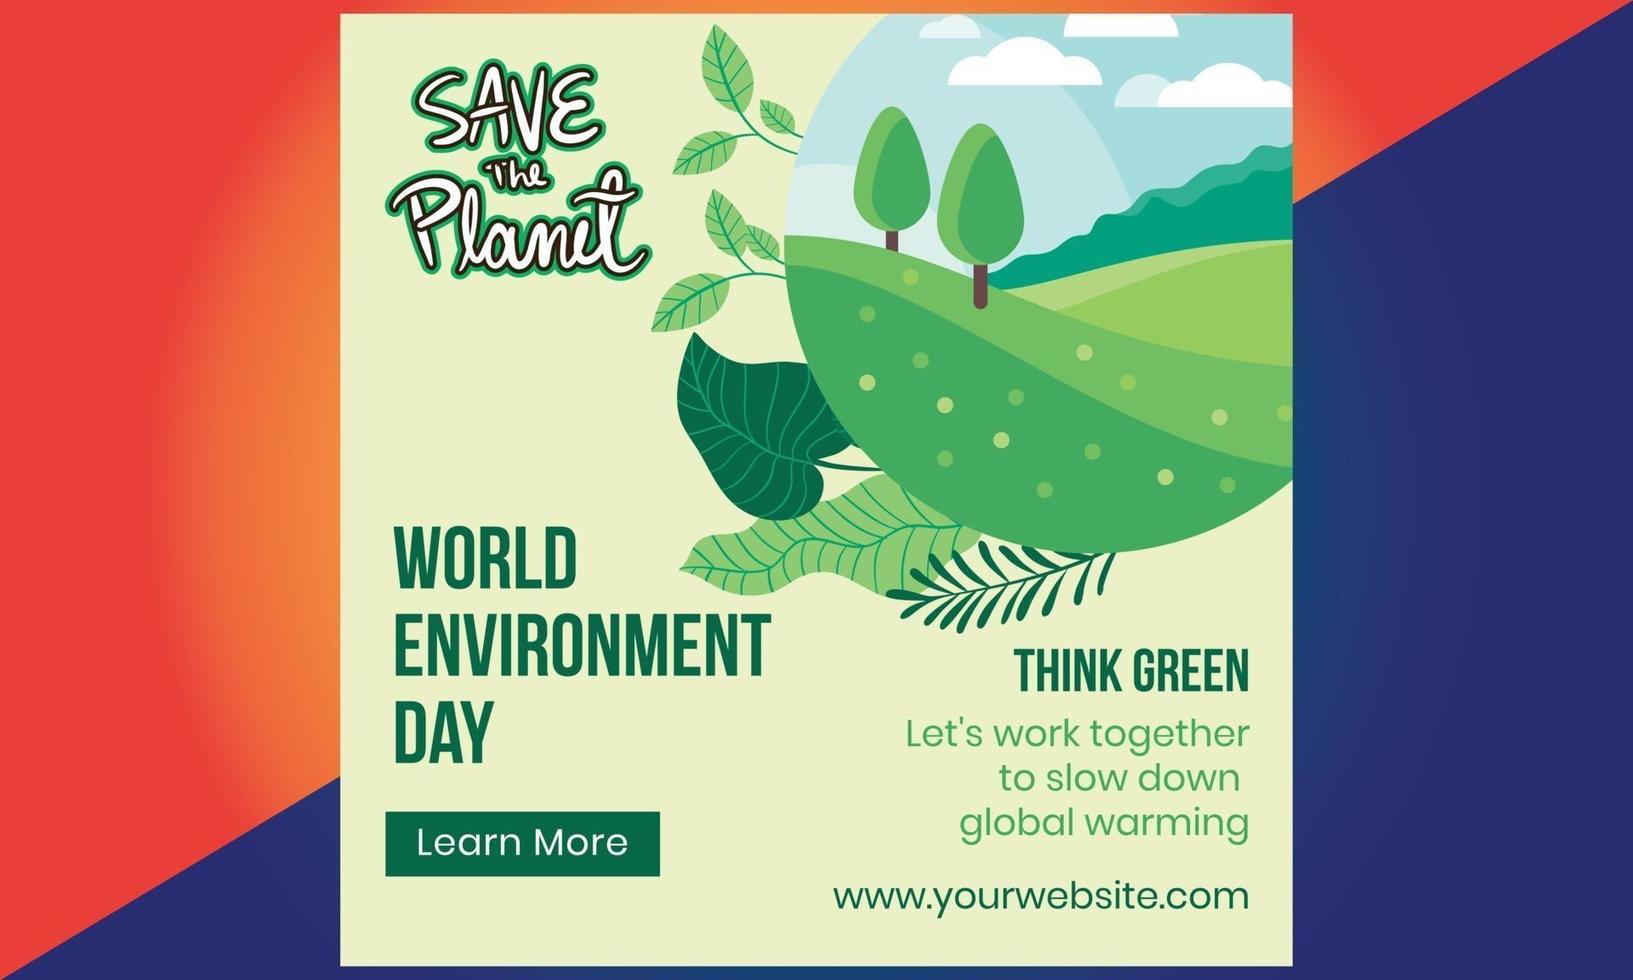 día Mundial del Medio Ambiente. tierra ecológica verde. día Mundial del Medio Ambiente. vector